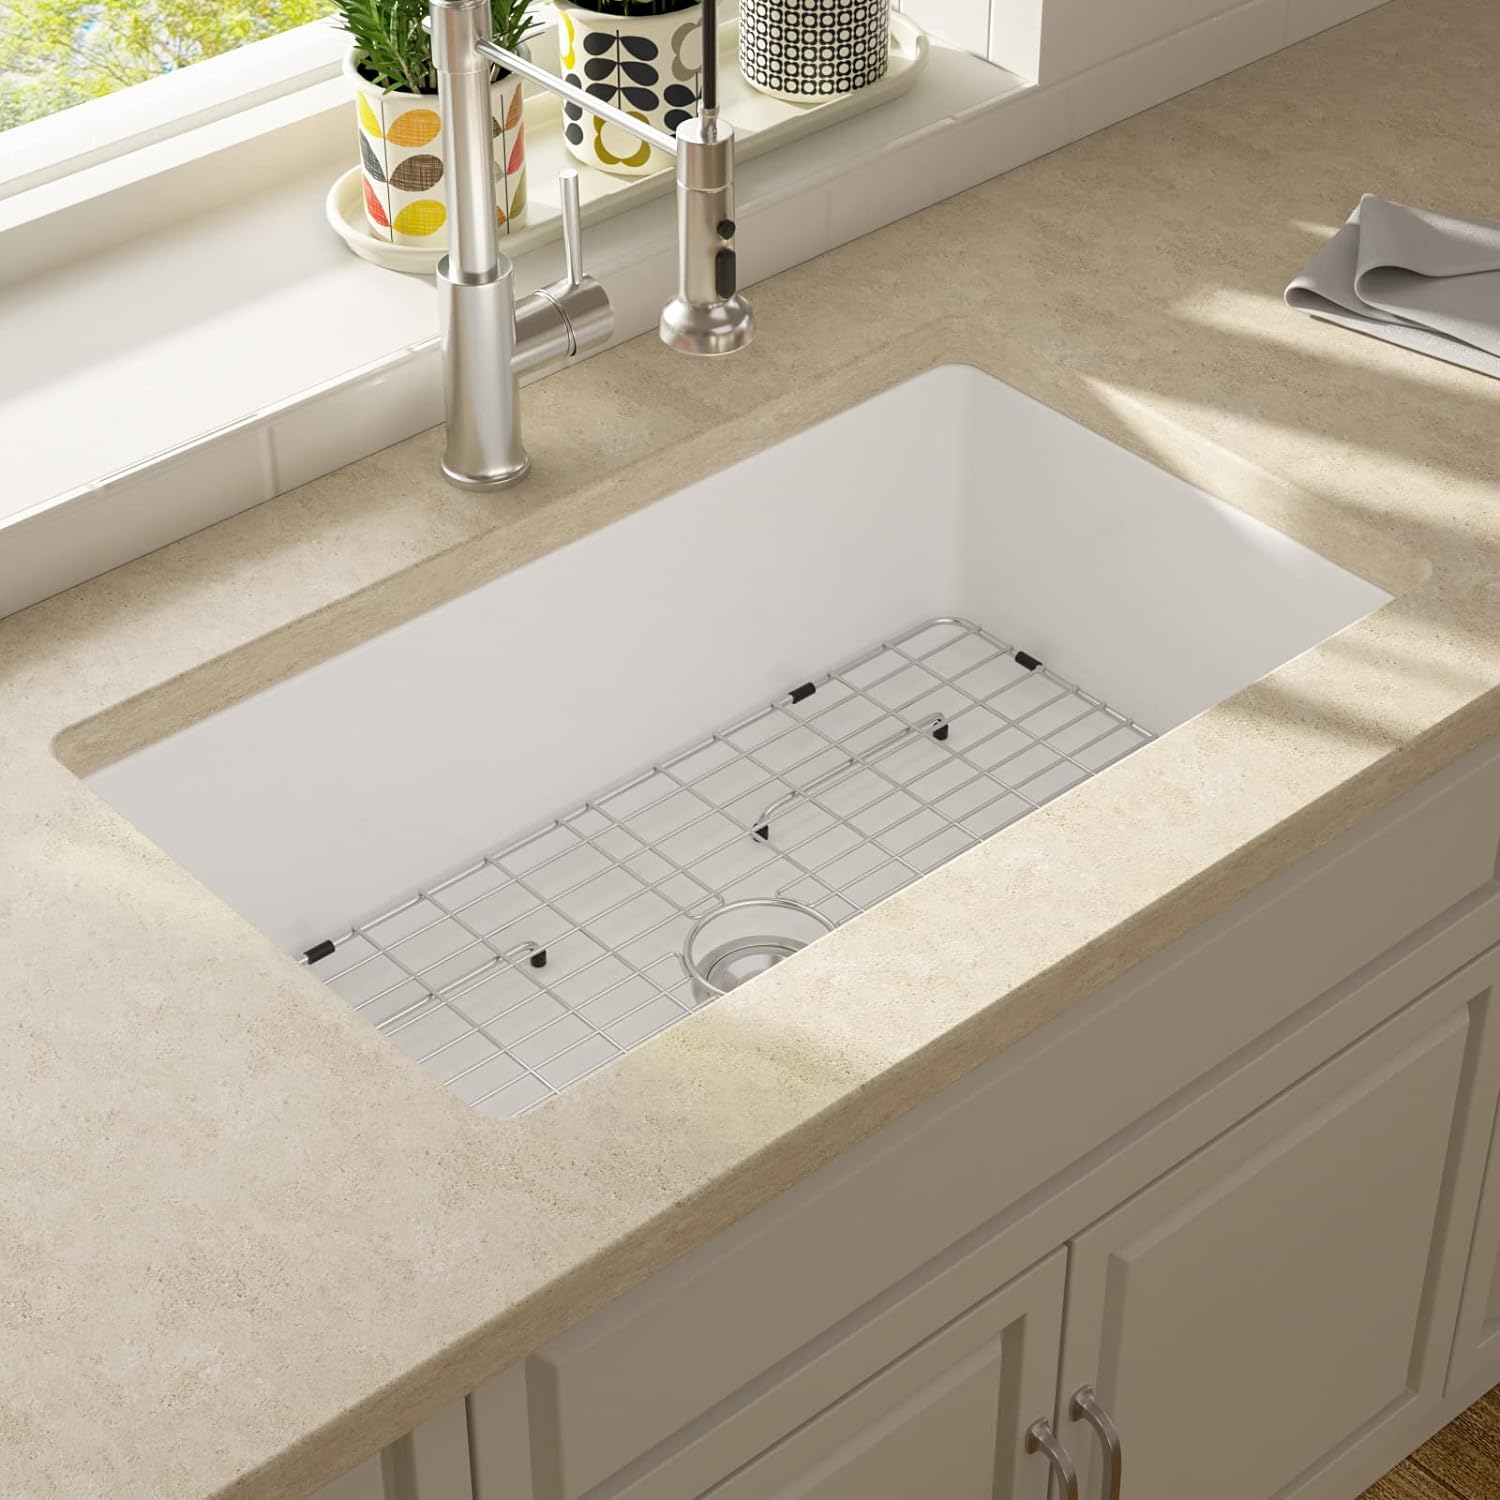 Lordear Workstation Double Bowl Kitchen Sink 33 Inch White Farmhouse Sink | Lordear